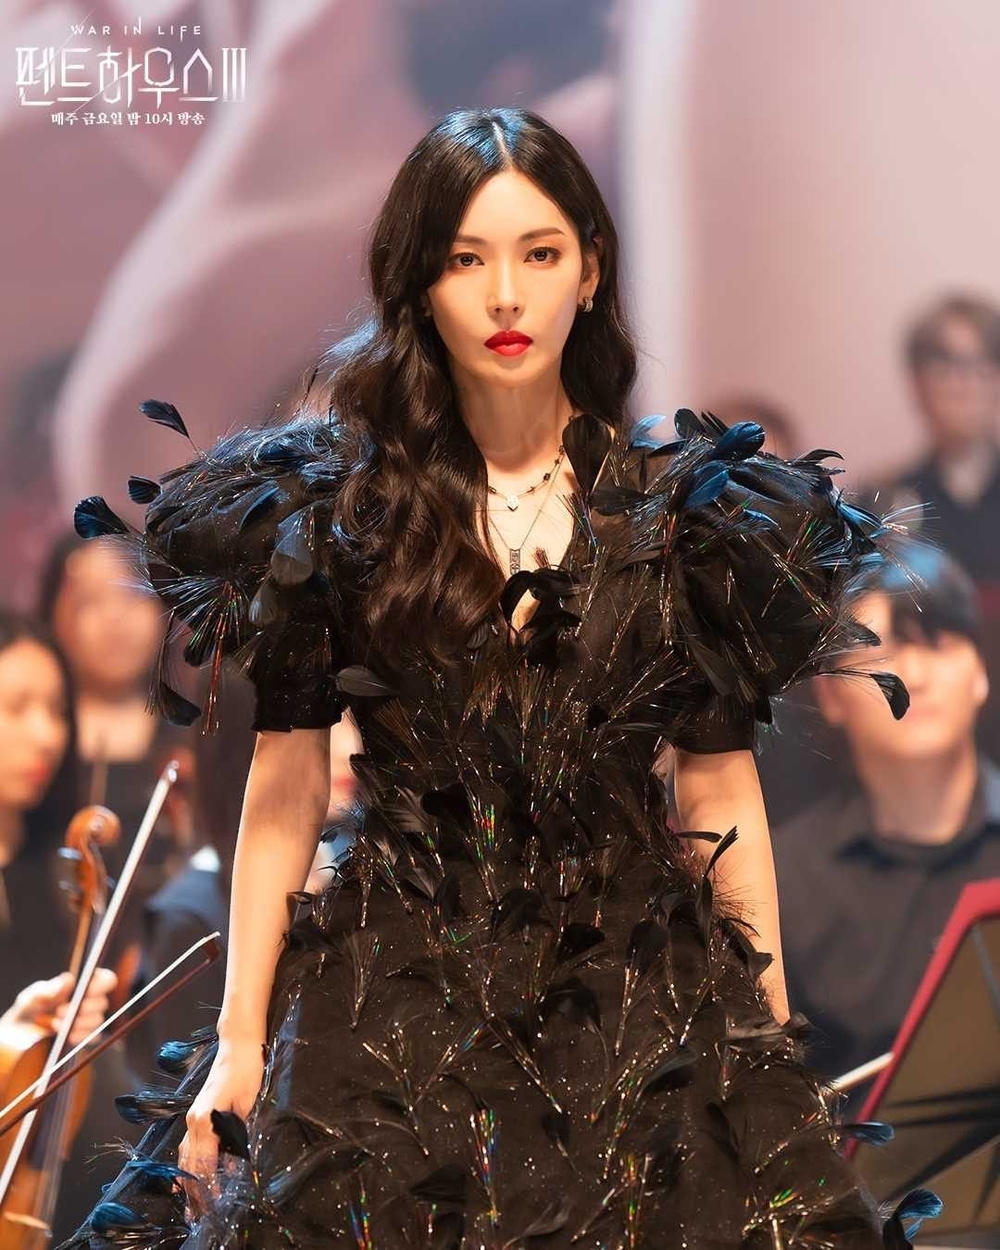 Phát hiện ra Seo Ye Ji mượn váy của ác nữ Penthouse ở phim mới: Sang chảnh ngang nhau nhưng điên nữ nổi hơn nhờ 1 điểm - Ảnh 3.